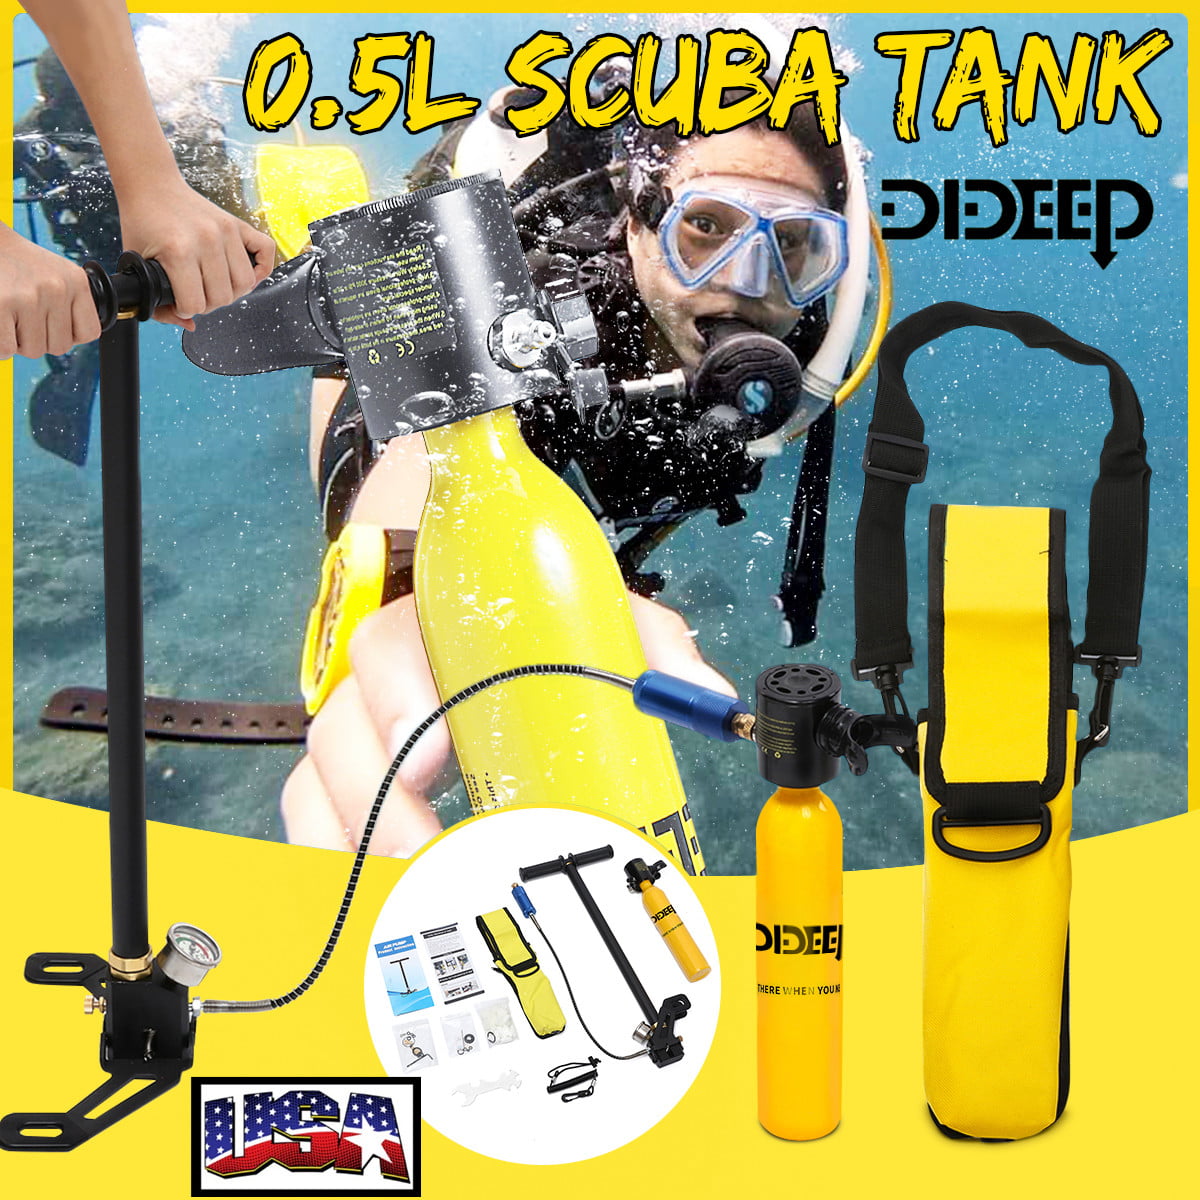 Mini SCUBA Tank Diving Oxygen Reserve DIDEEP 0.5L Air Hand Pump Dive Equipment Diving Tank